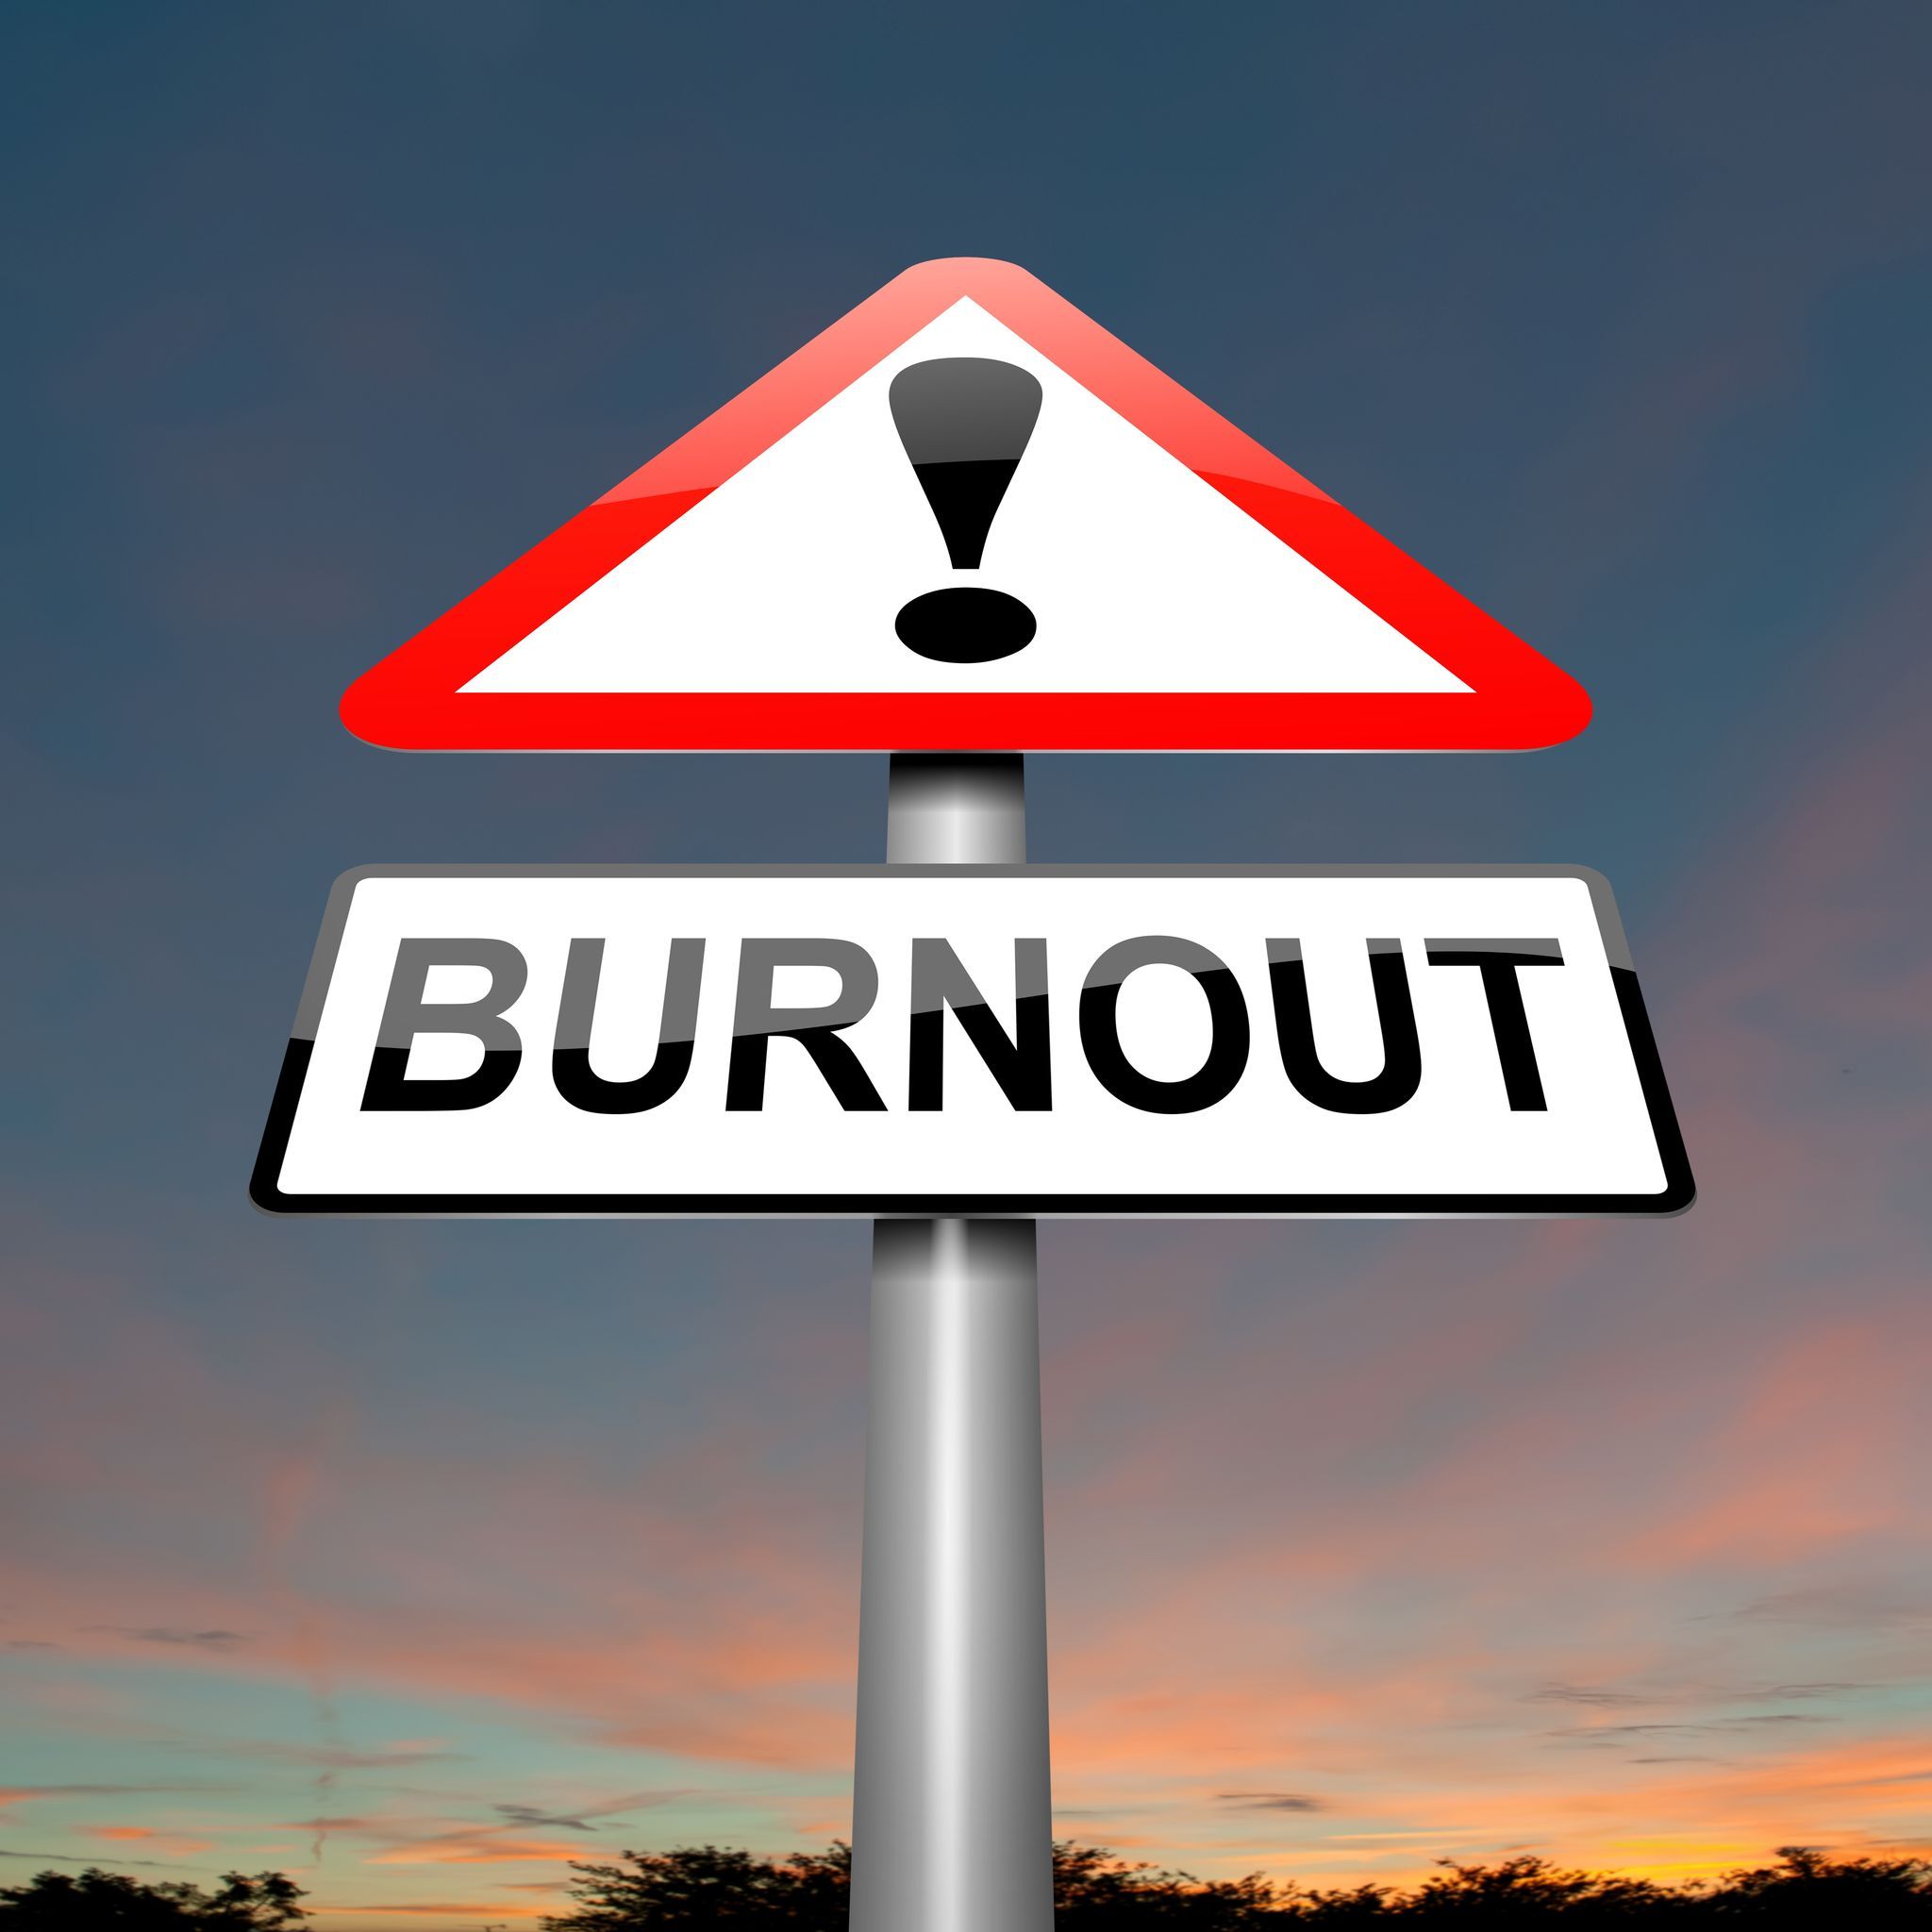 burnout-souffrance-travail-charge-fatigue-stress-